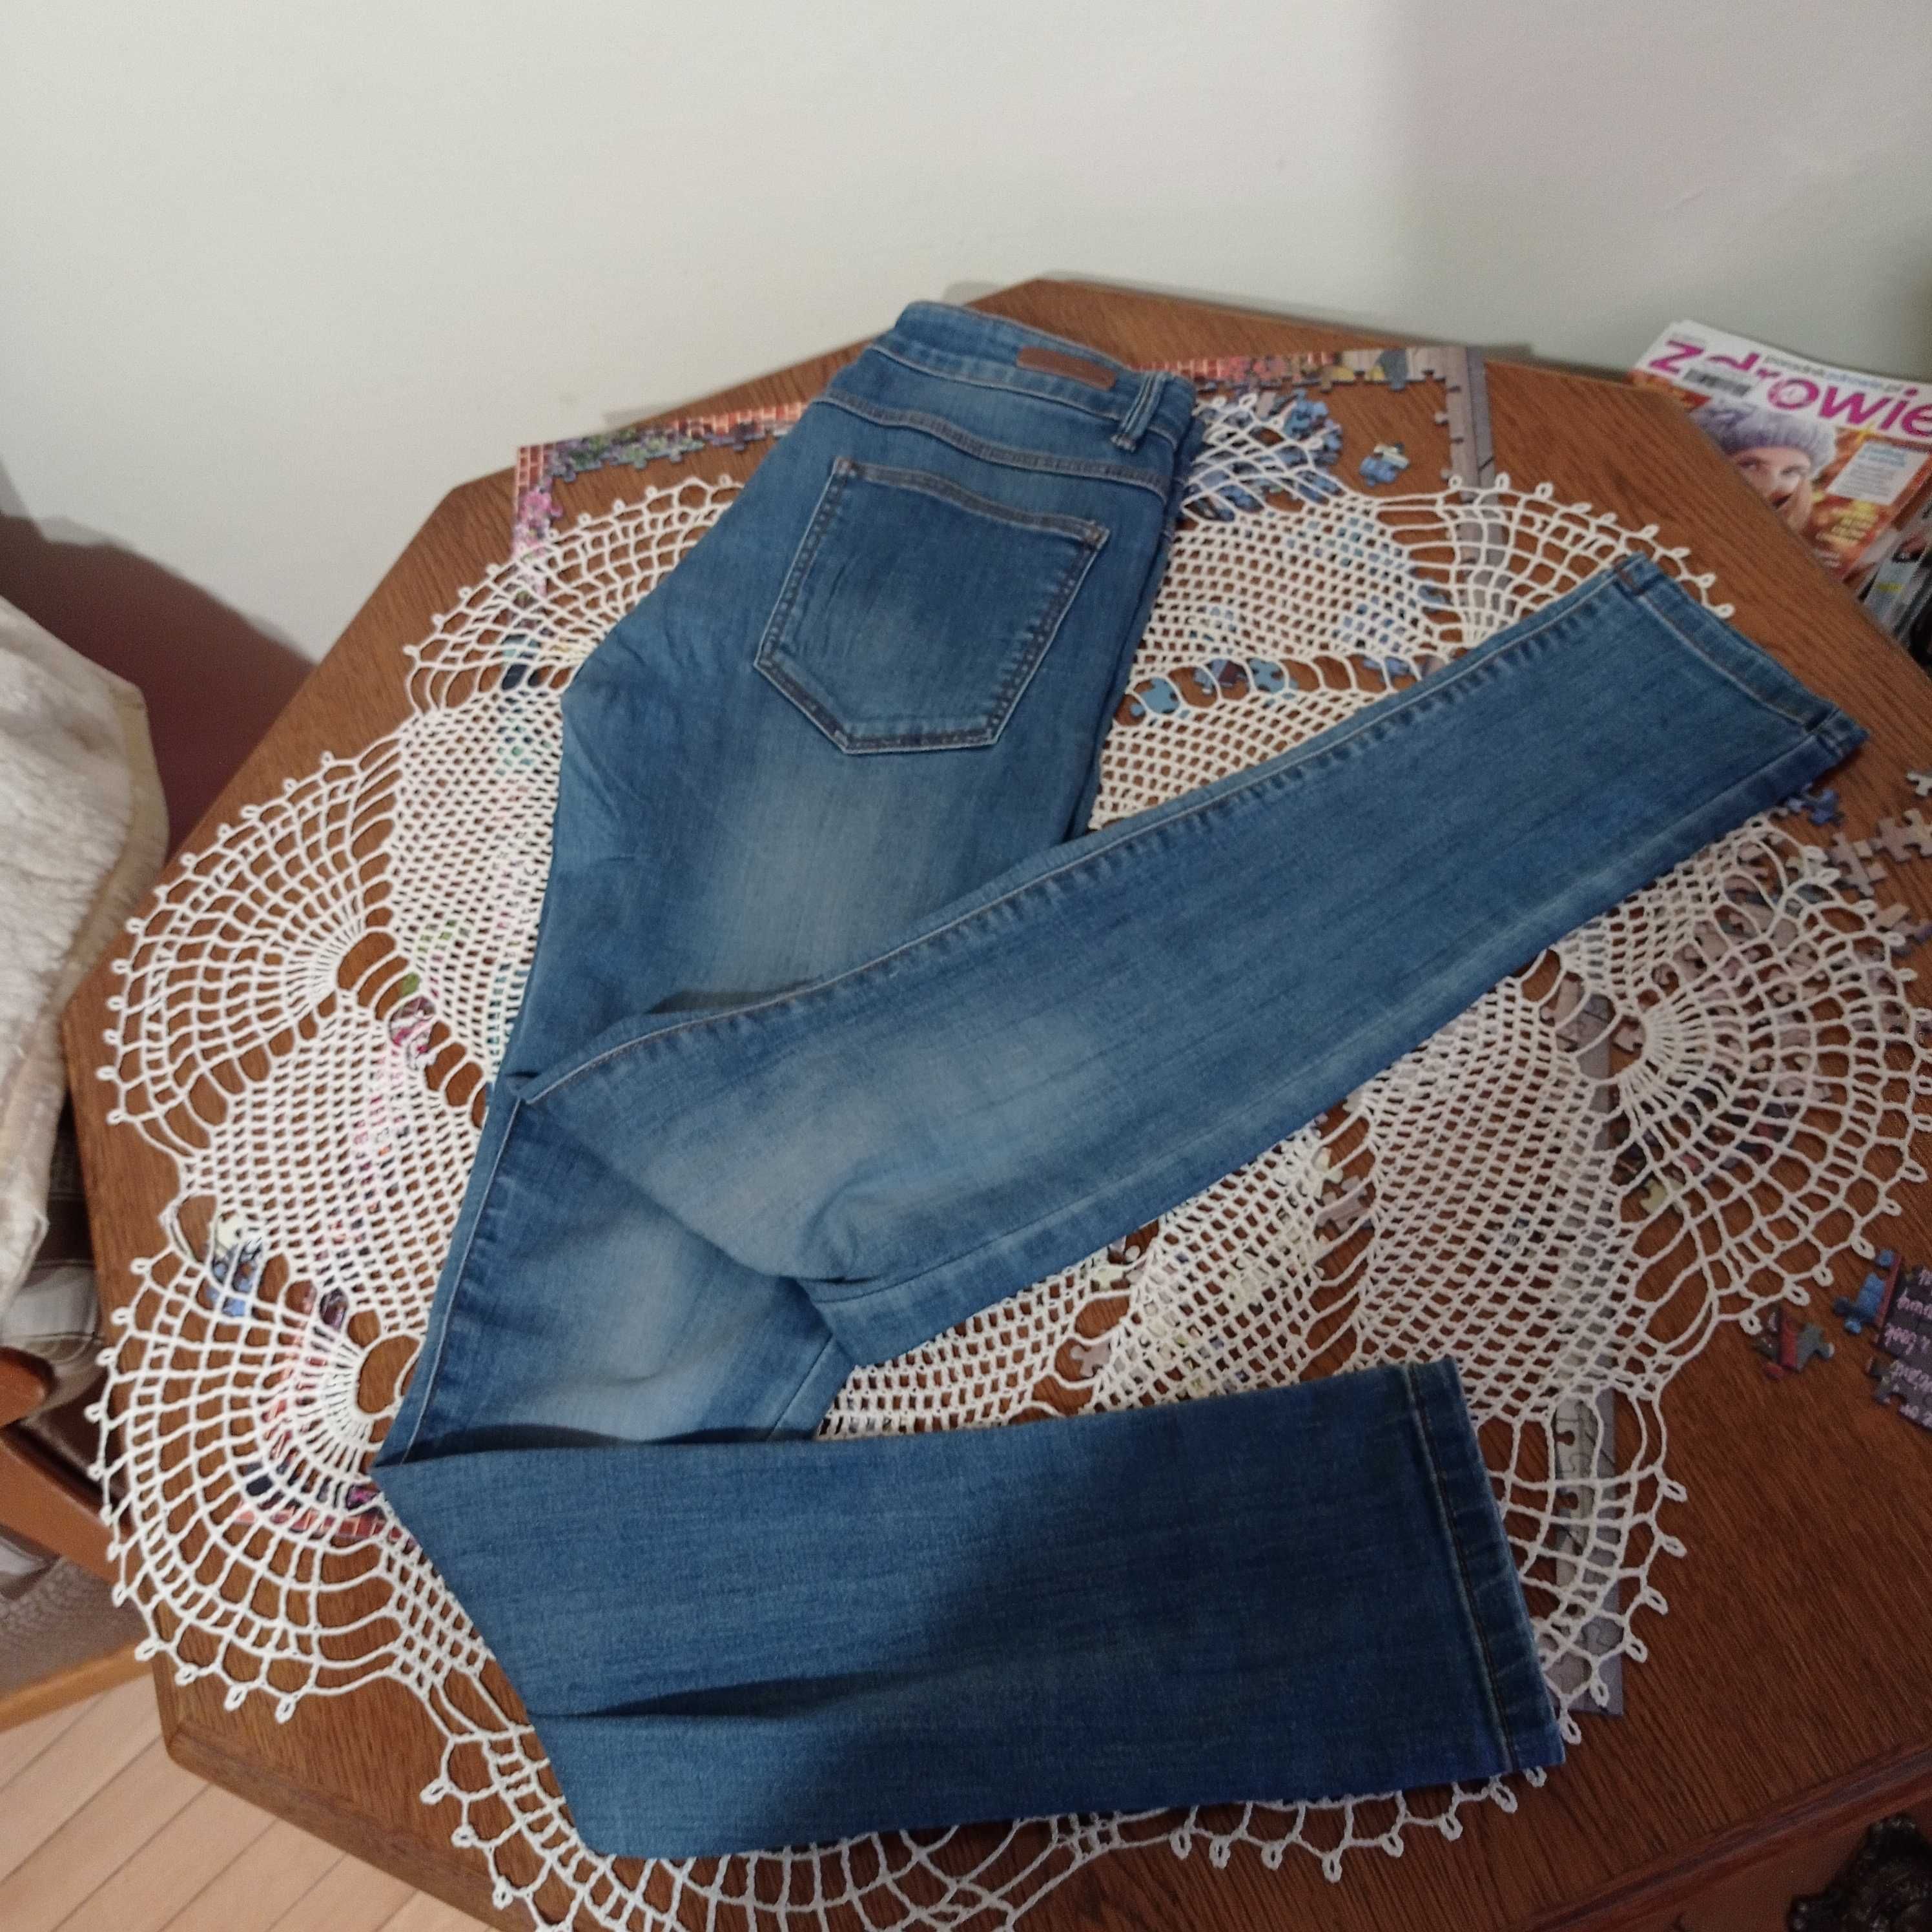 Spodnie jeansowe rurki Promod. Rozmiar S